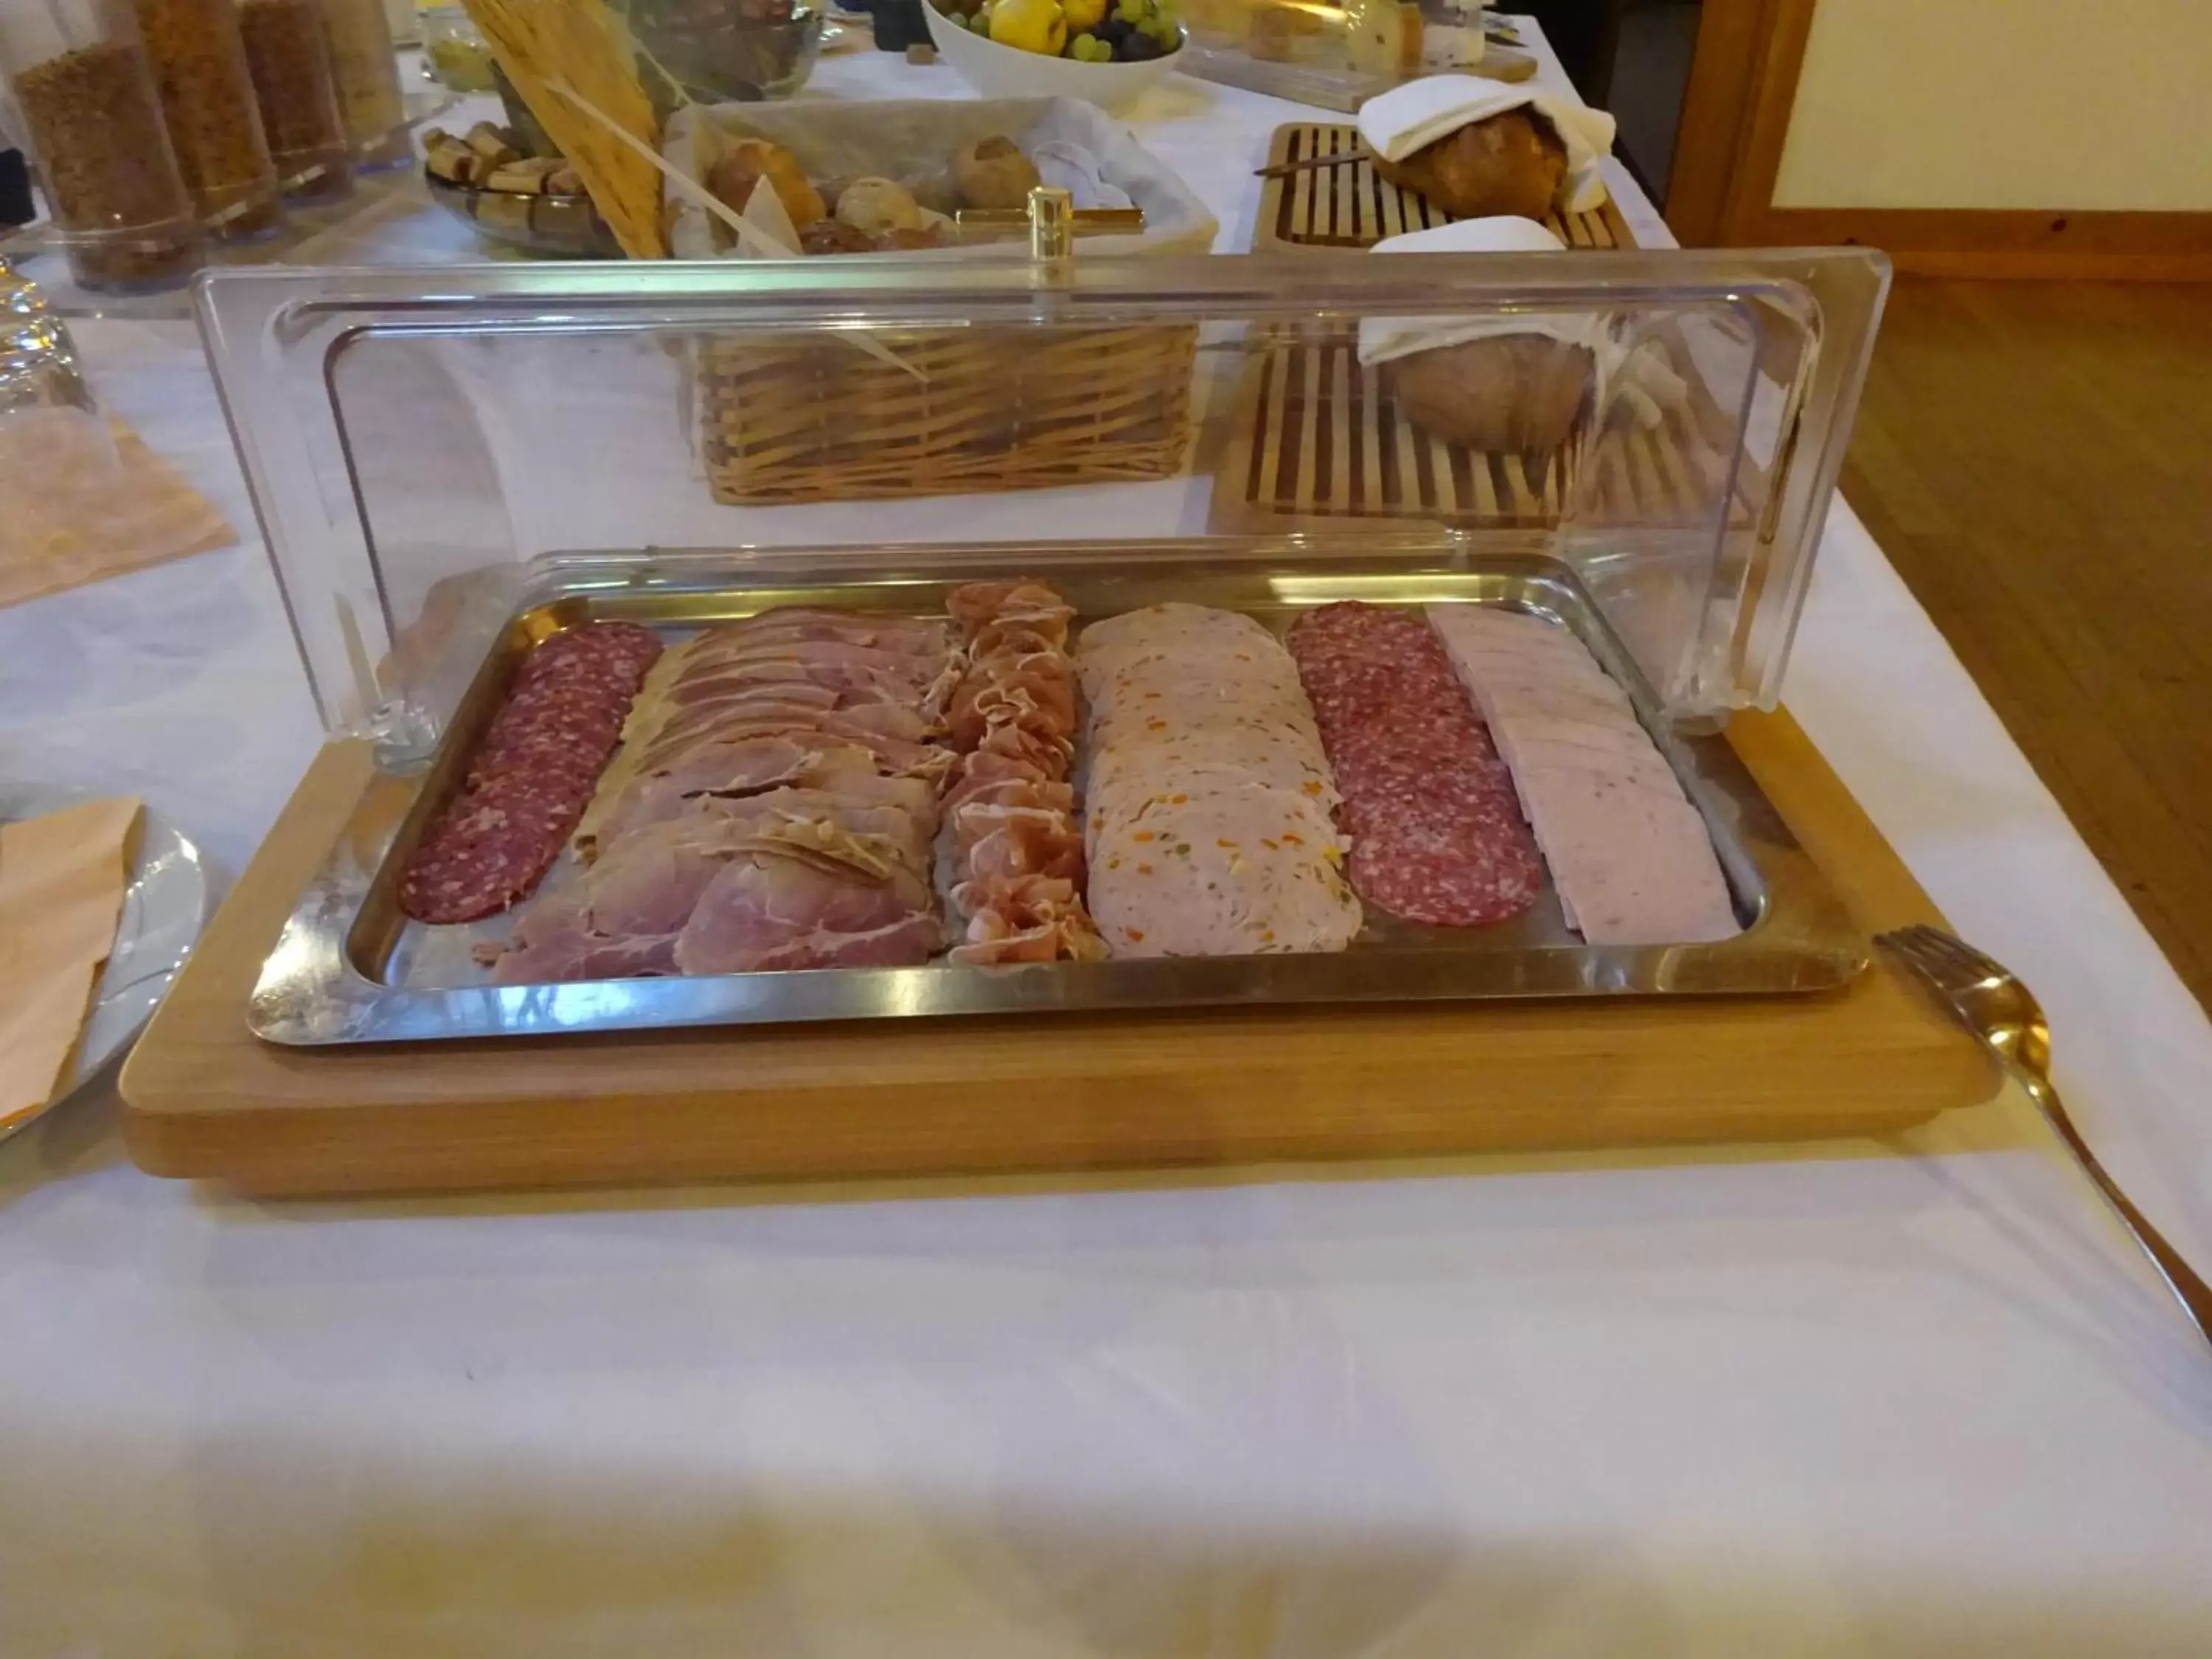 Buffet breakfast in Hotel Appenberg